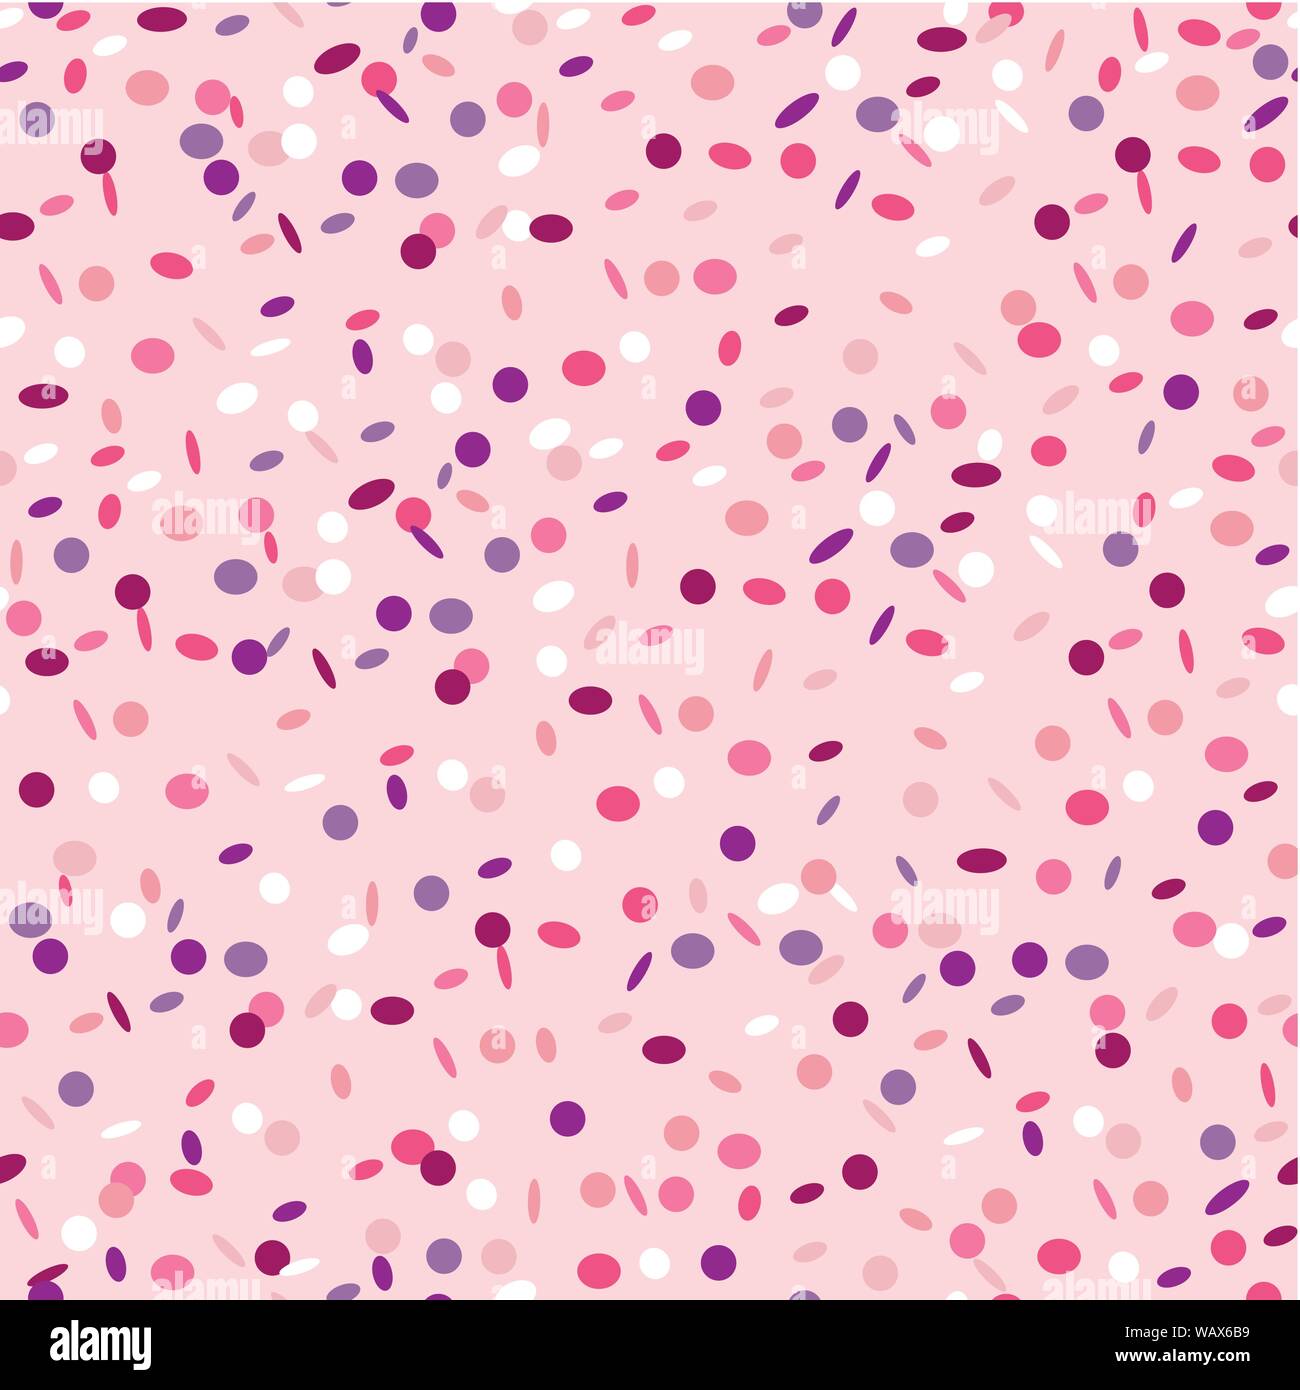 Motif transparent rose fou de pluie de confettis background vector illustration EPS10 Illustration de Vecteur